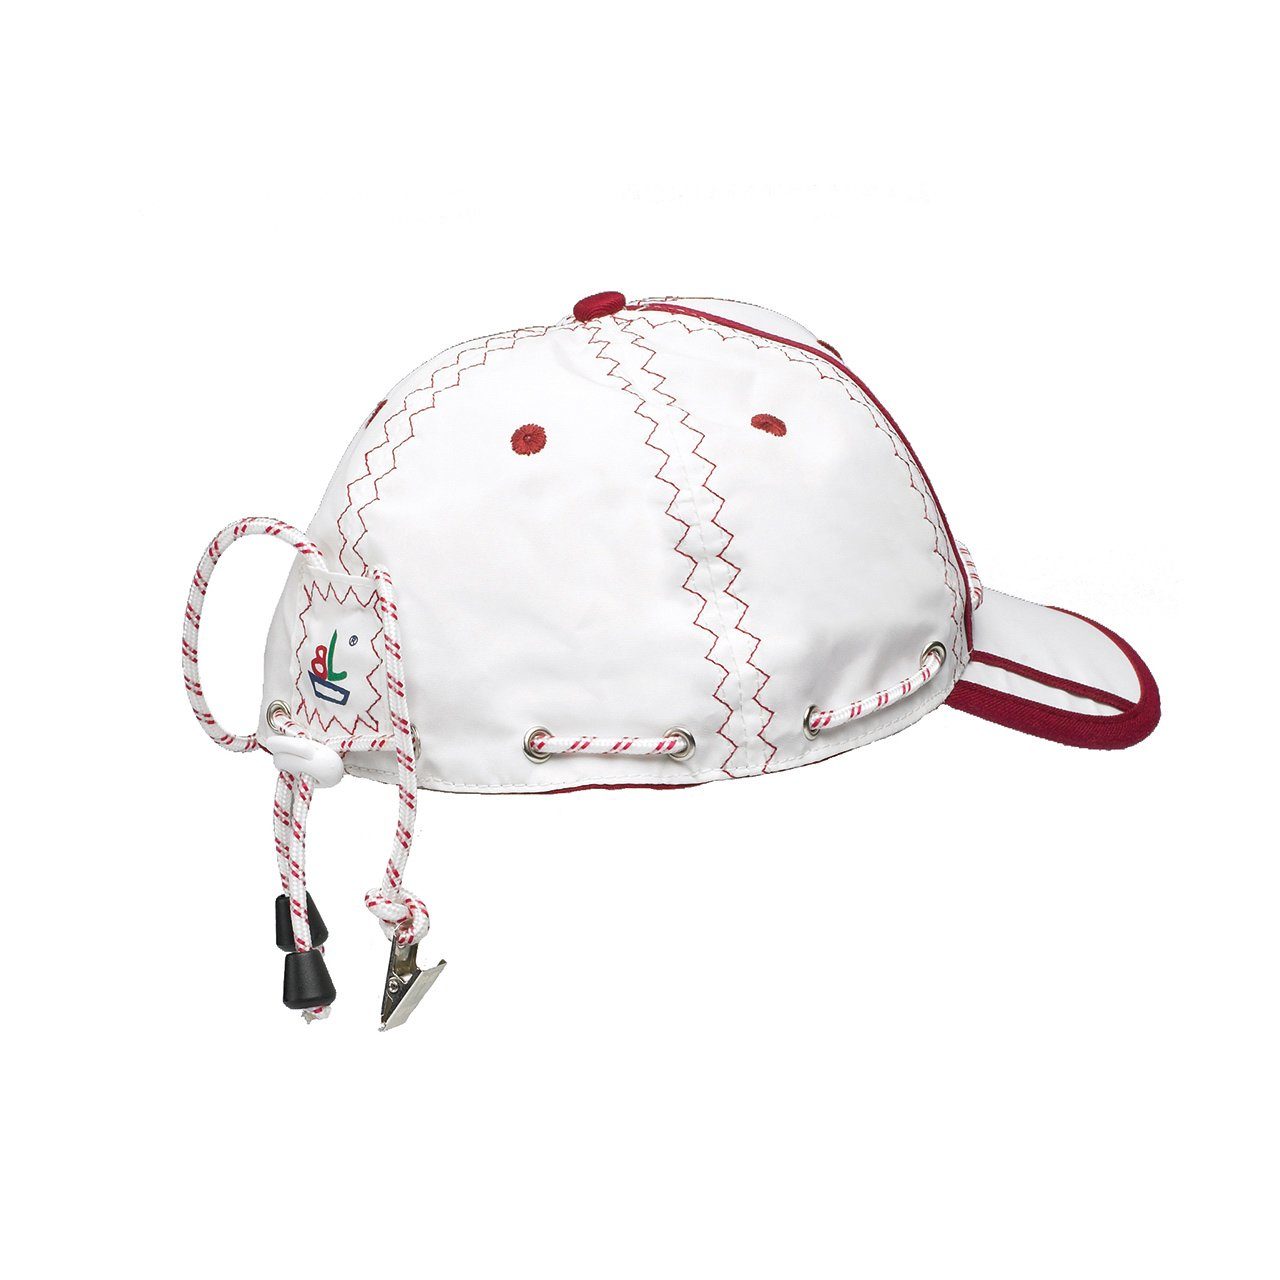 Trend Marine Baseball Sea unisex, Kragen-Clip, Weiß/Rot Cap Segeln Cap unisize, mit